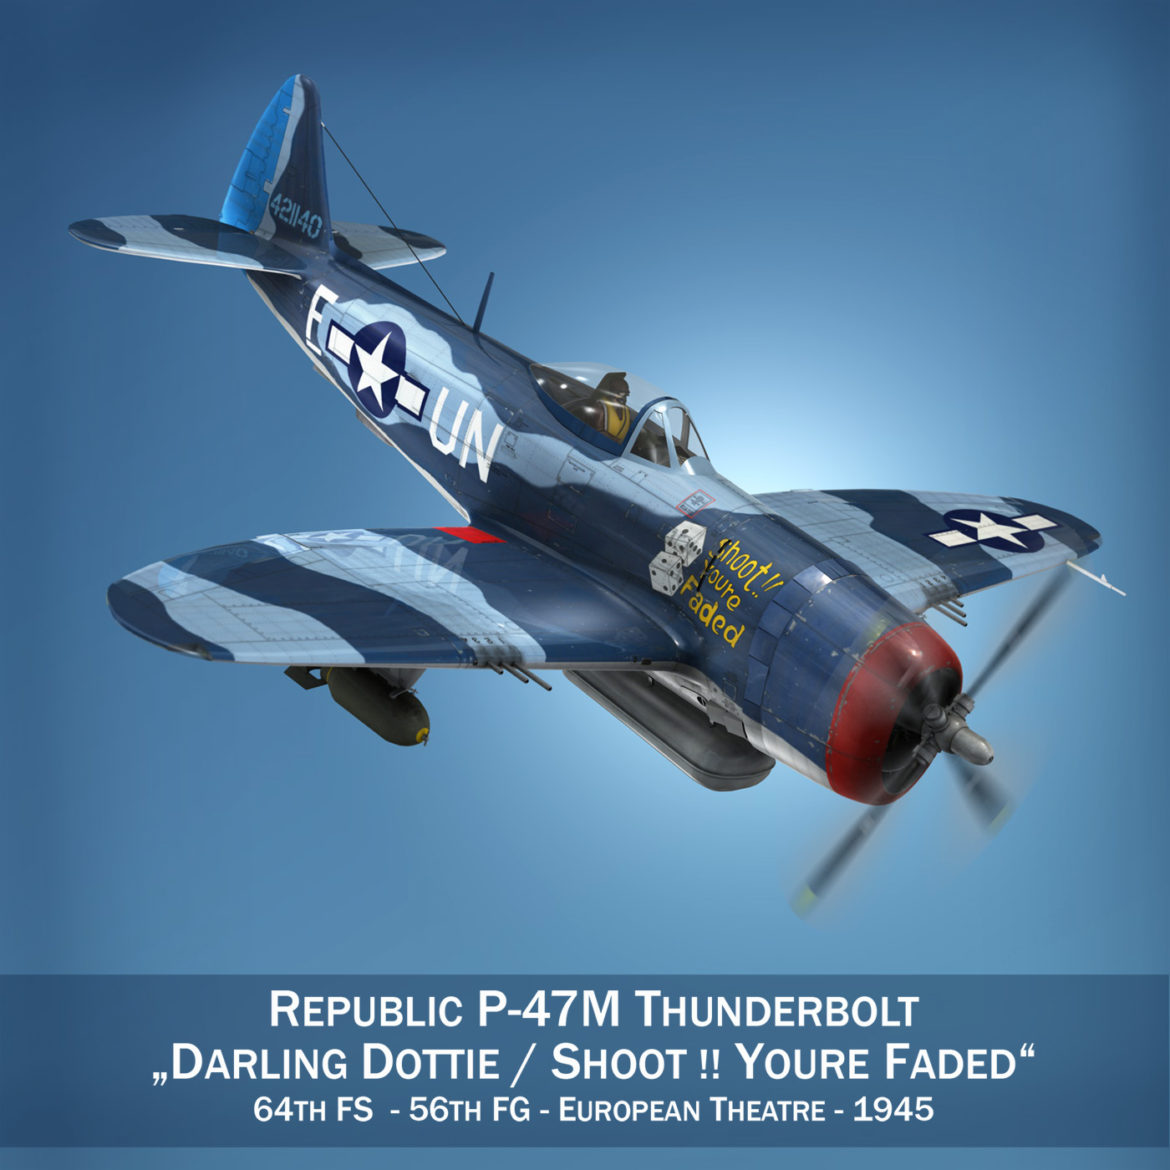 republic p-47m thunderbolt – darling dottie 3d model 3ds c4d lwo lw lws obj fbx 303856